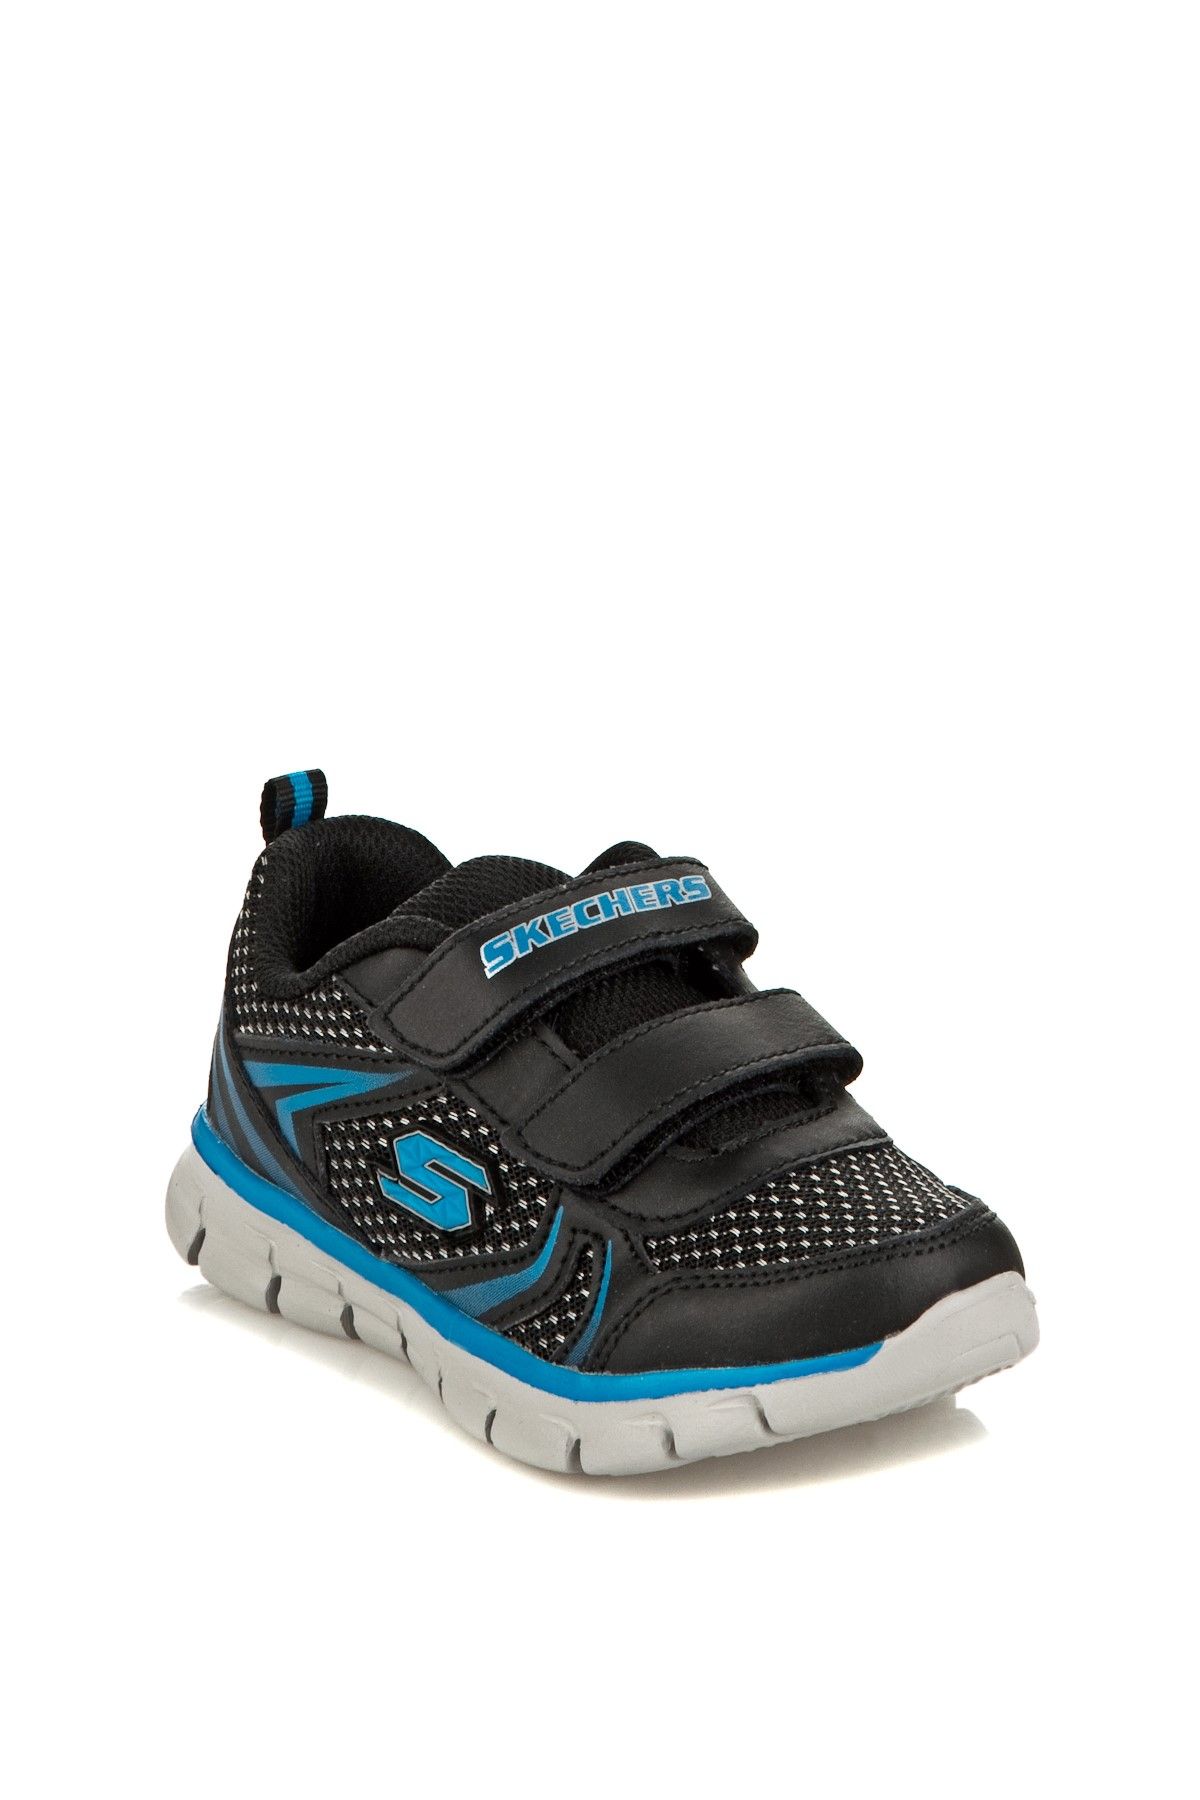 Skechers Siyah Mavi Unisex Çocuk Ayakkabı 95091N Bkbl